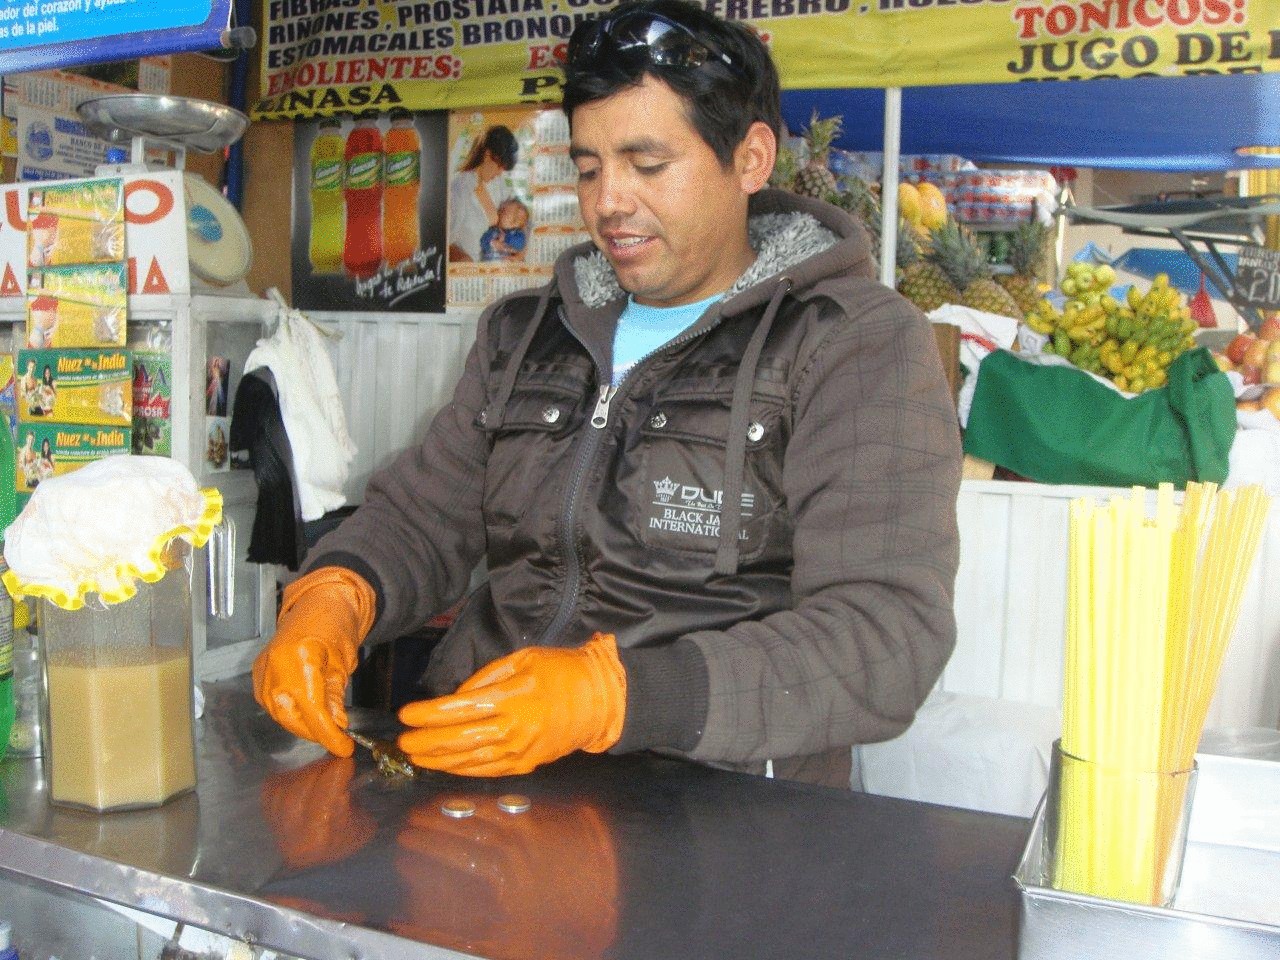 Перуанцы создали уникальный тонизирующий сок из лягушек